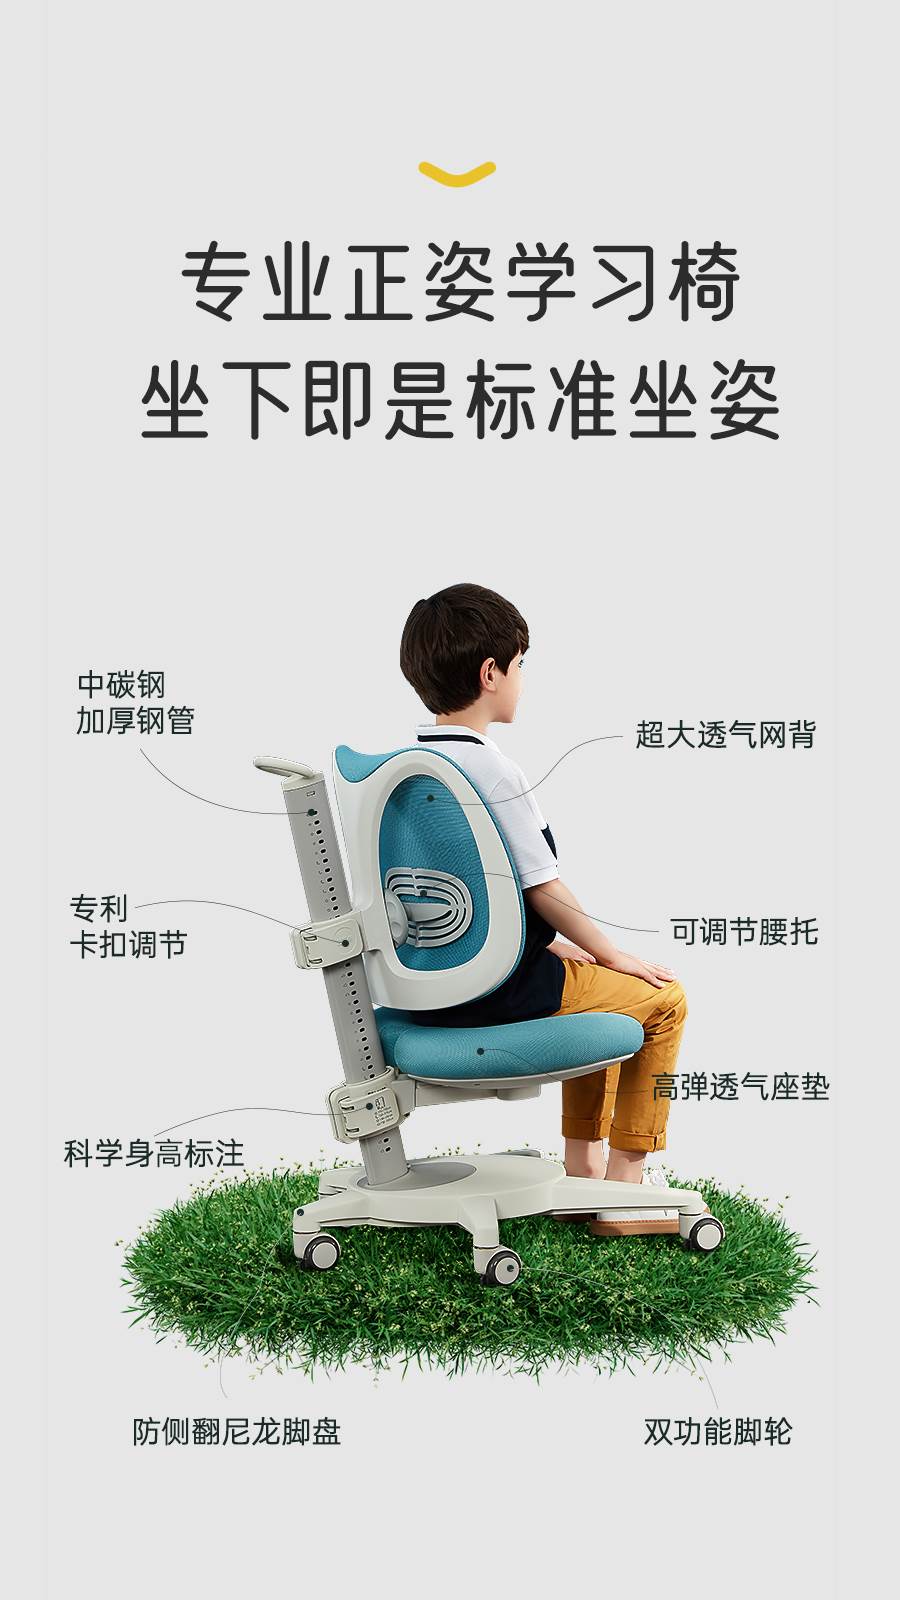 新款2平米 博睿多功能学习椅 单杆机械式可升降学生儿童椅